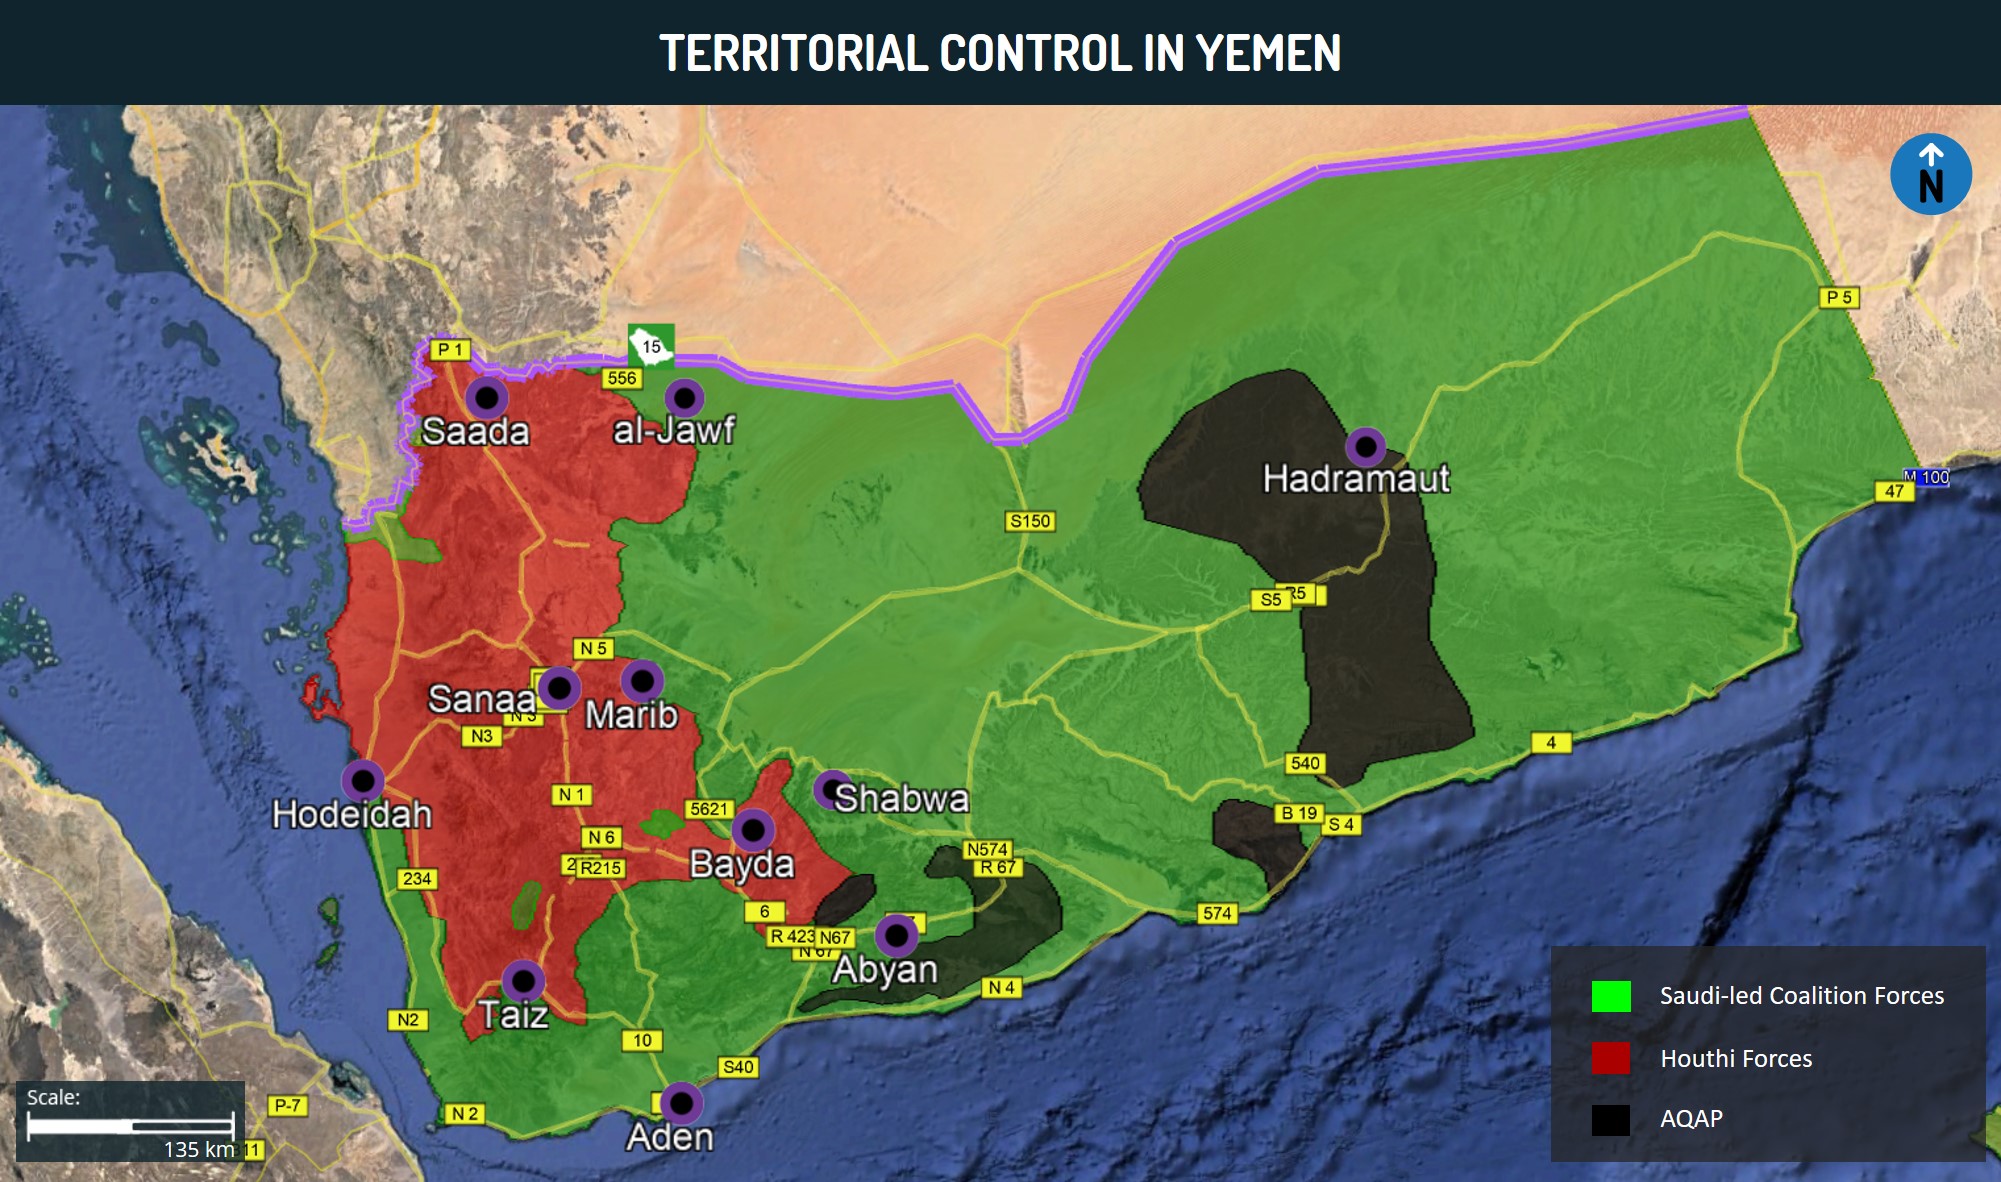 Territorial Control in Yemen